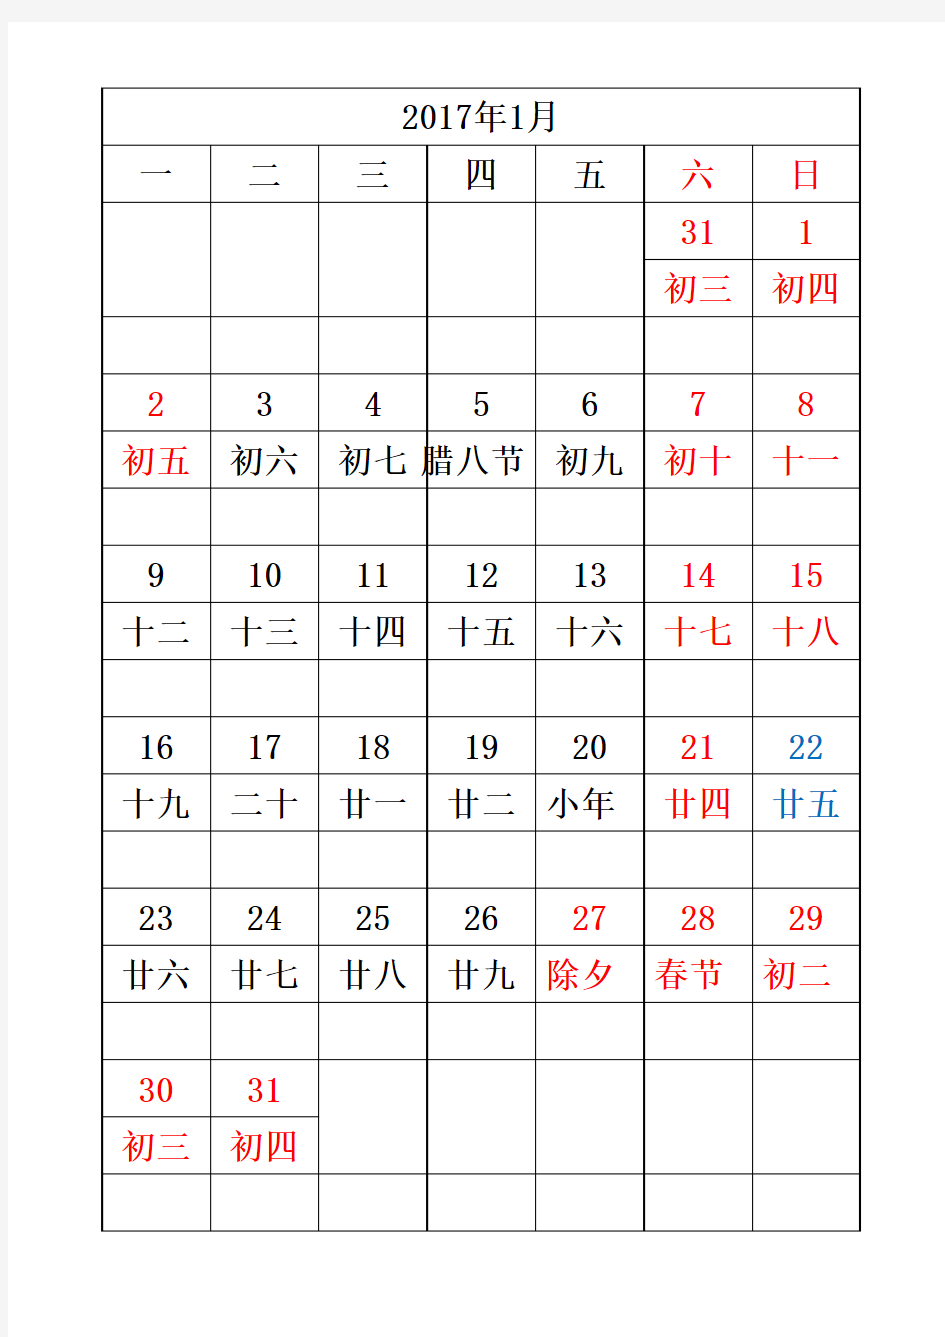 2017年日历表(含农历,假日红色,加班蓝色,节气绿色)-打印版